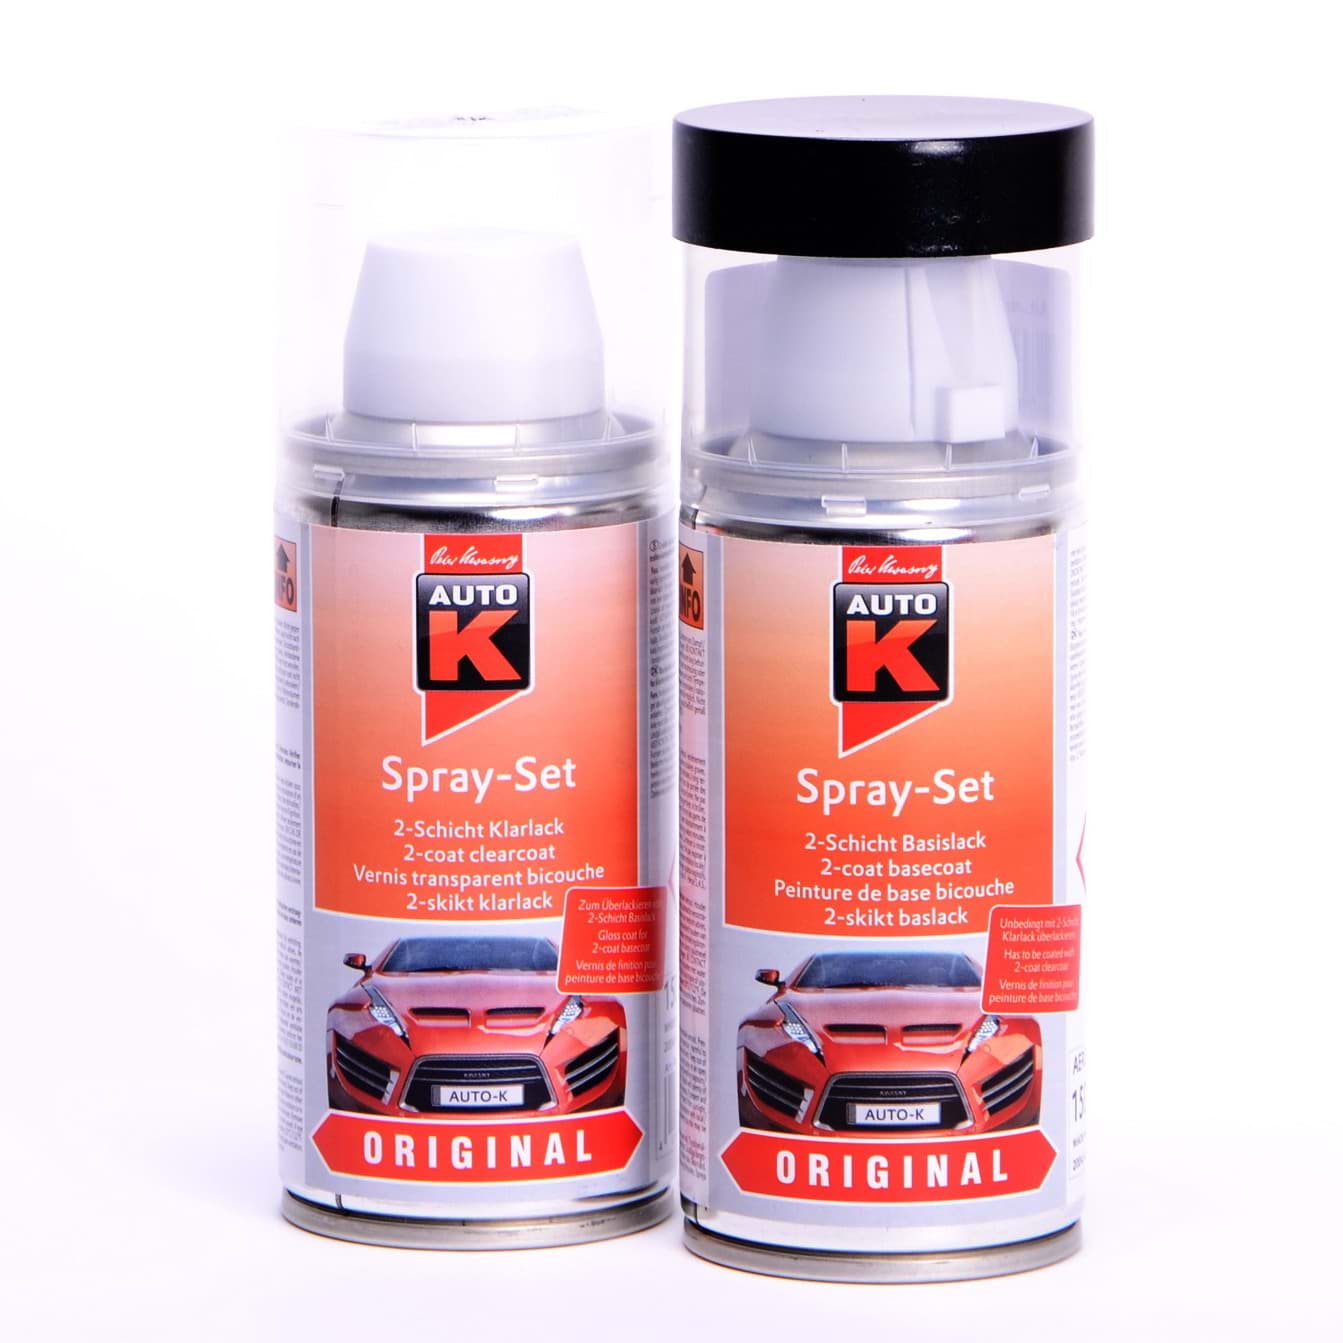 Afbeelding van Auto-K Spray-Set Autolack für Opel 176 Argonsilber met 21477